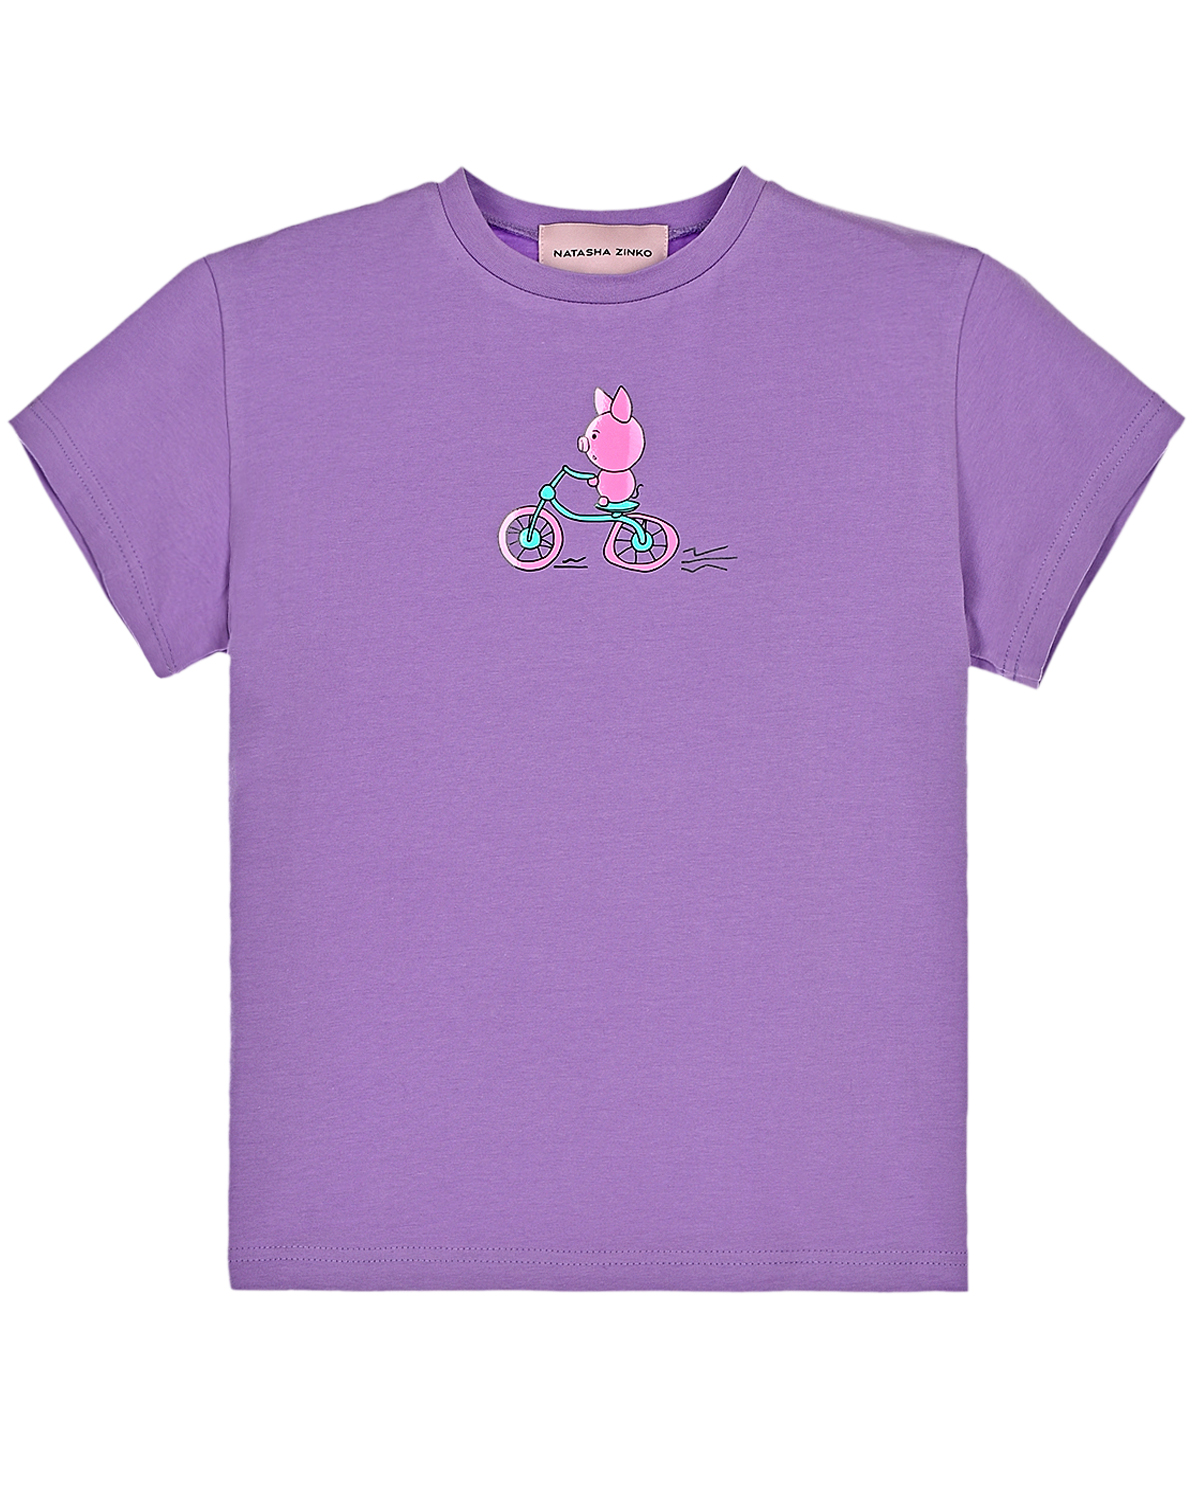 Фиолетовая футболка с принтом Natasha Zinko детская, размер 140, цвет фиолетовый - фото 1